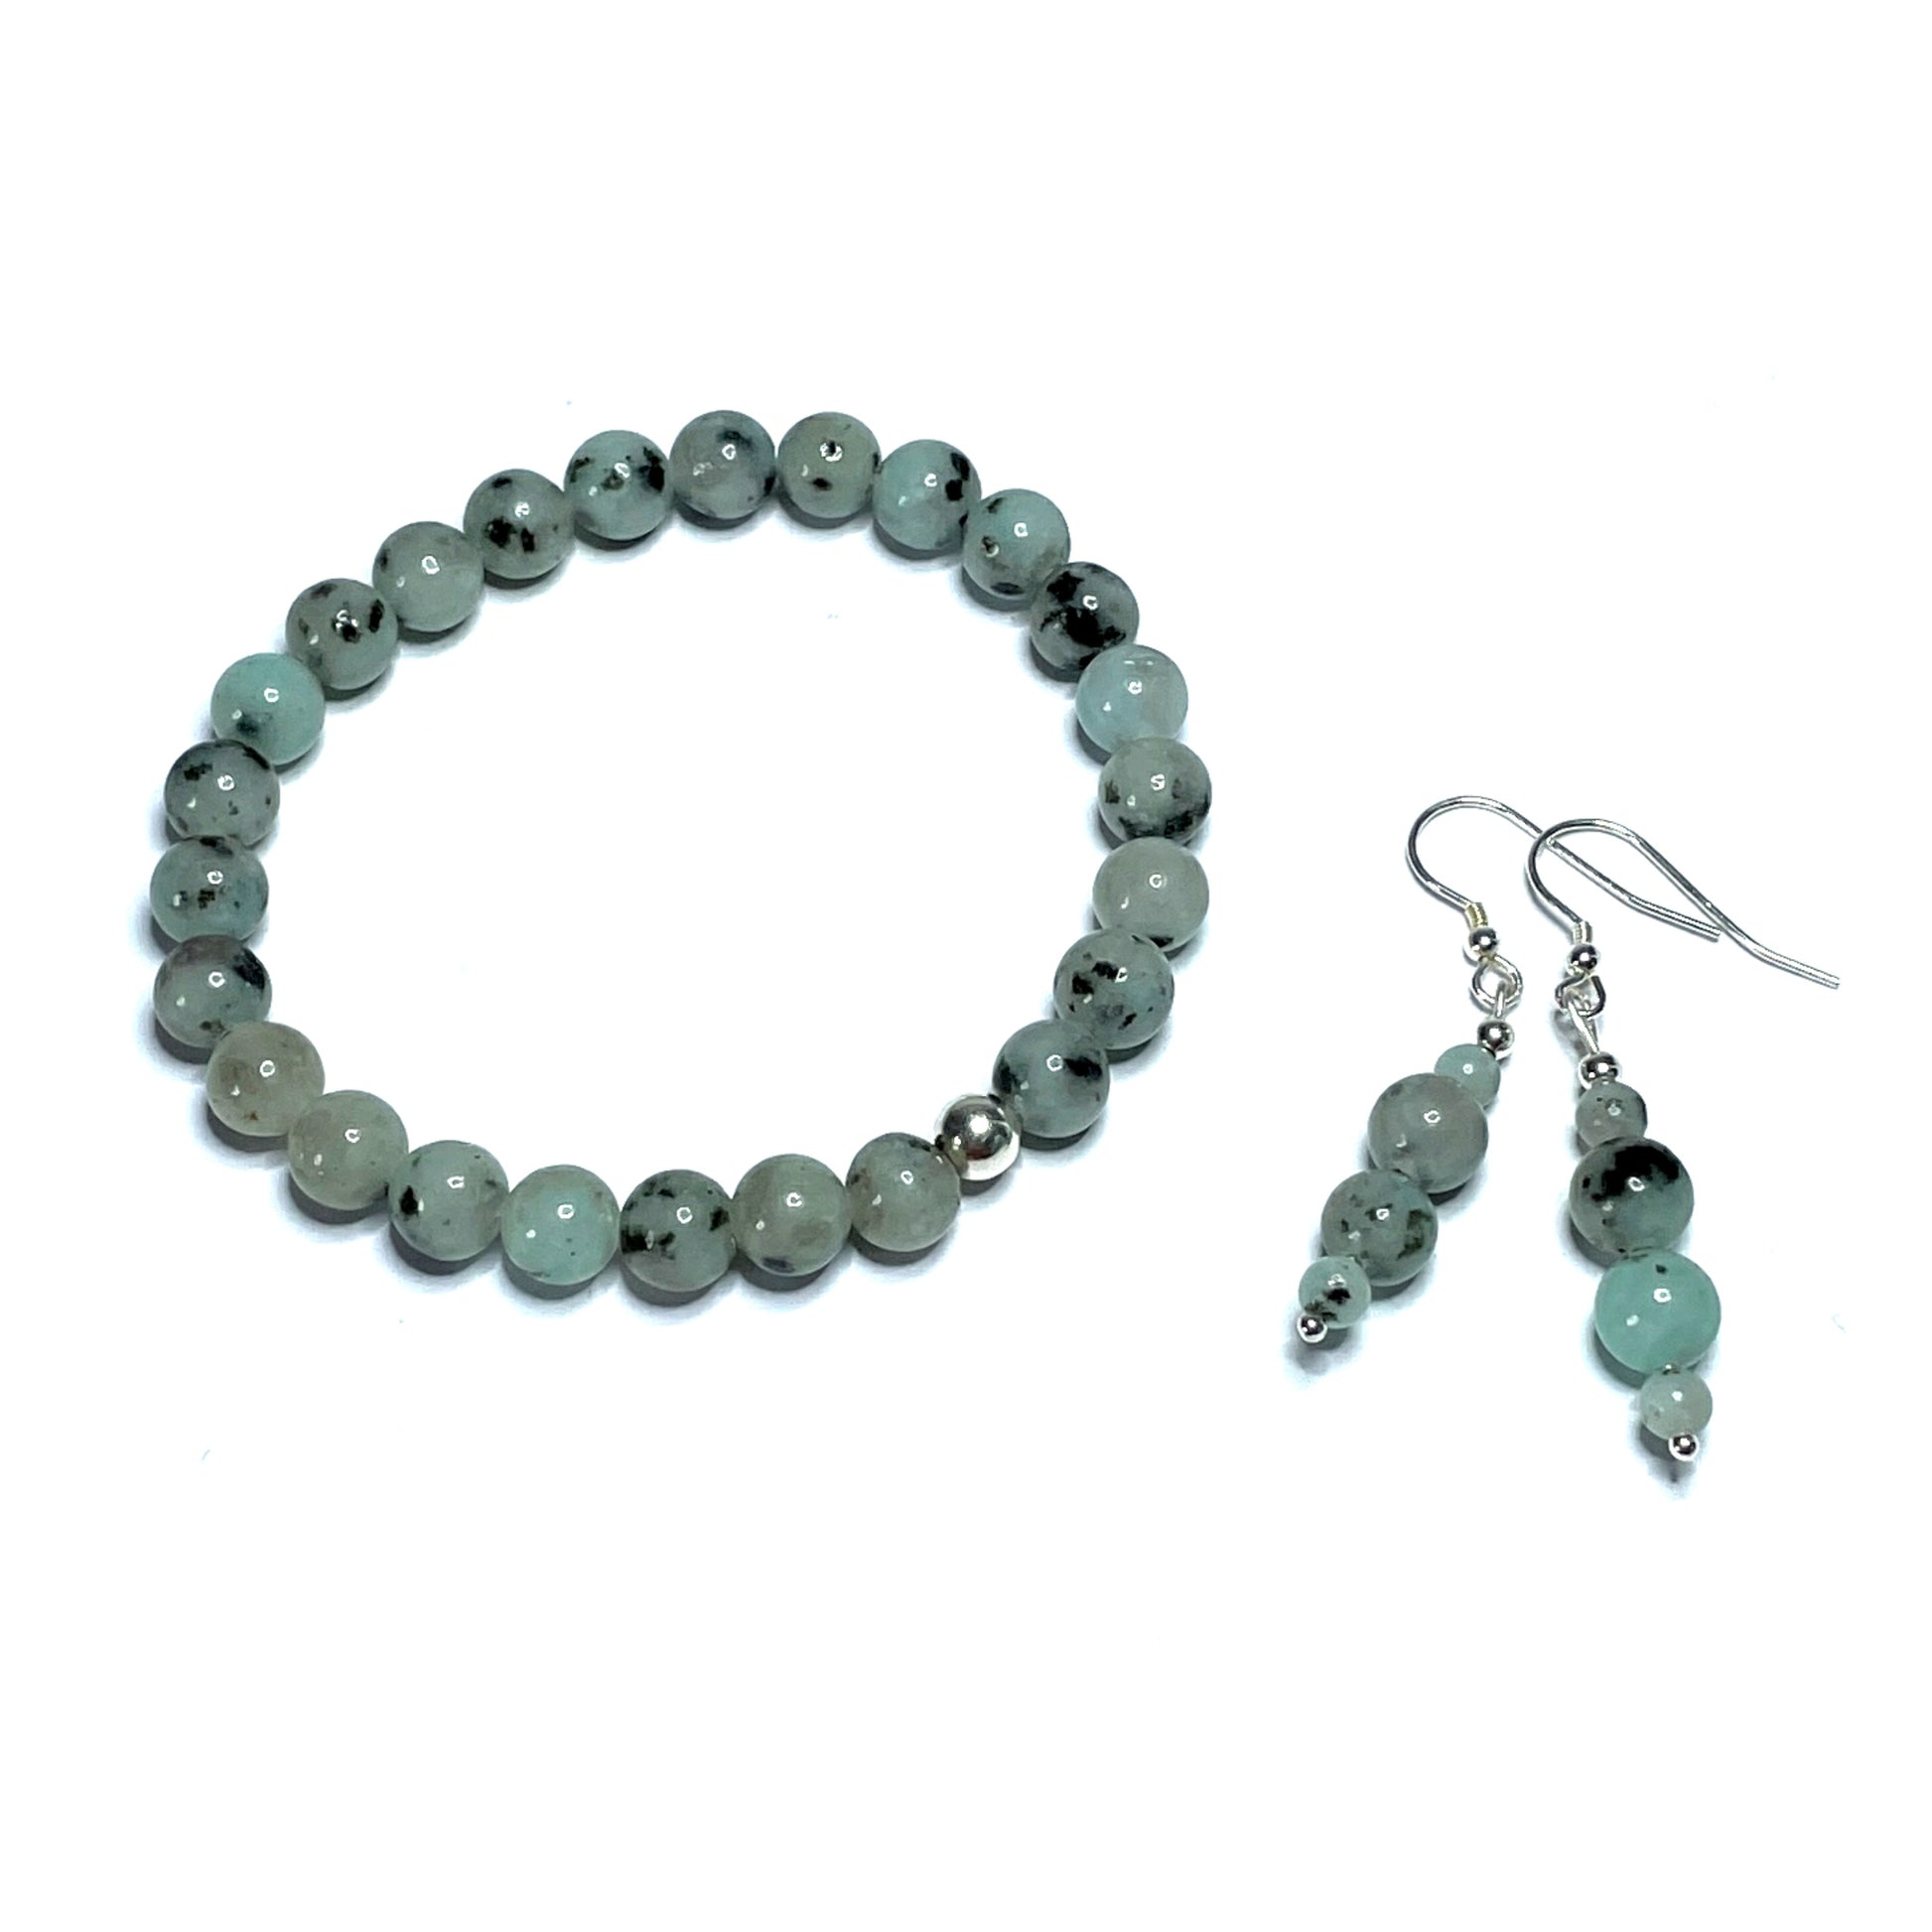 Lotus jasper crystal bracelet and earrings set